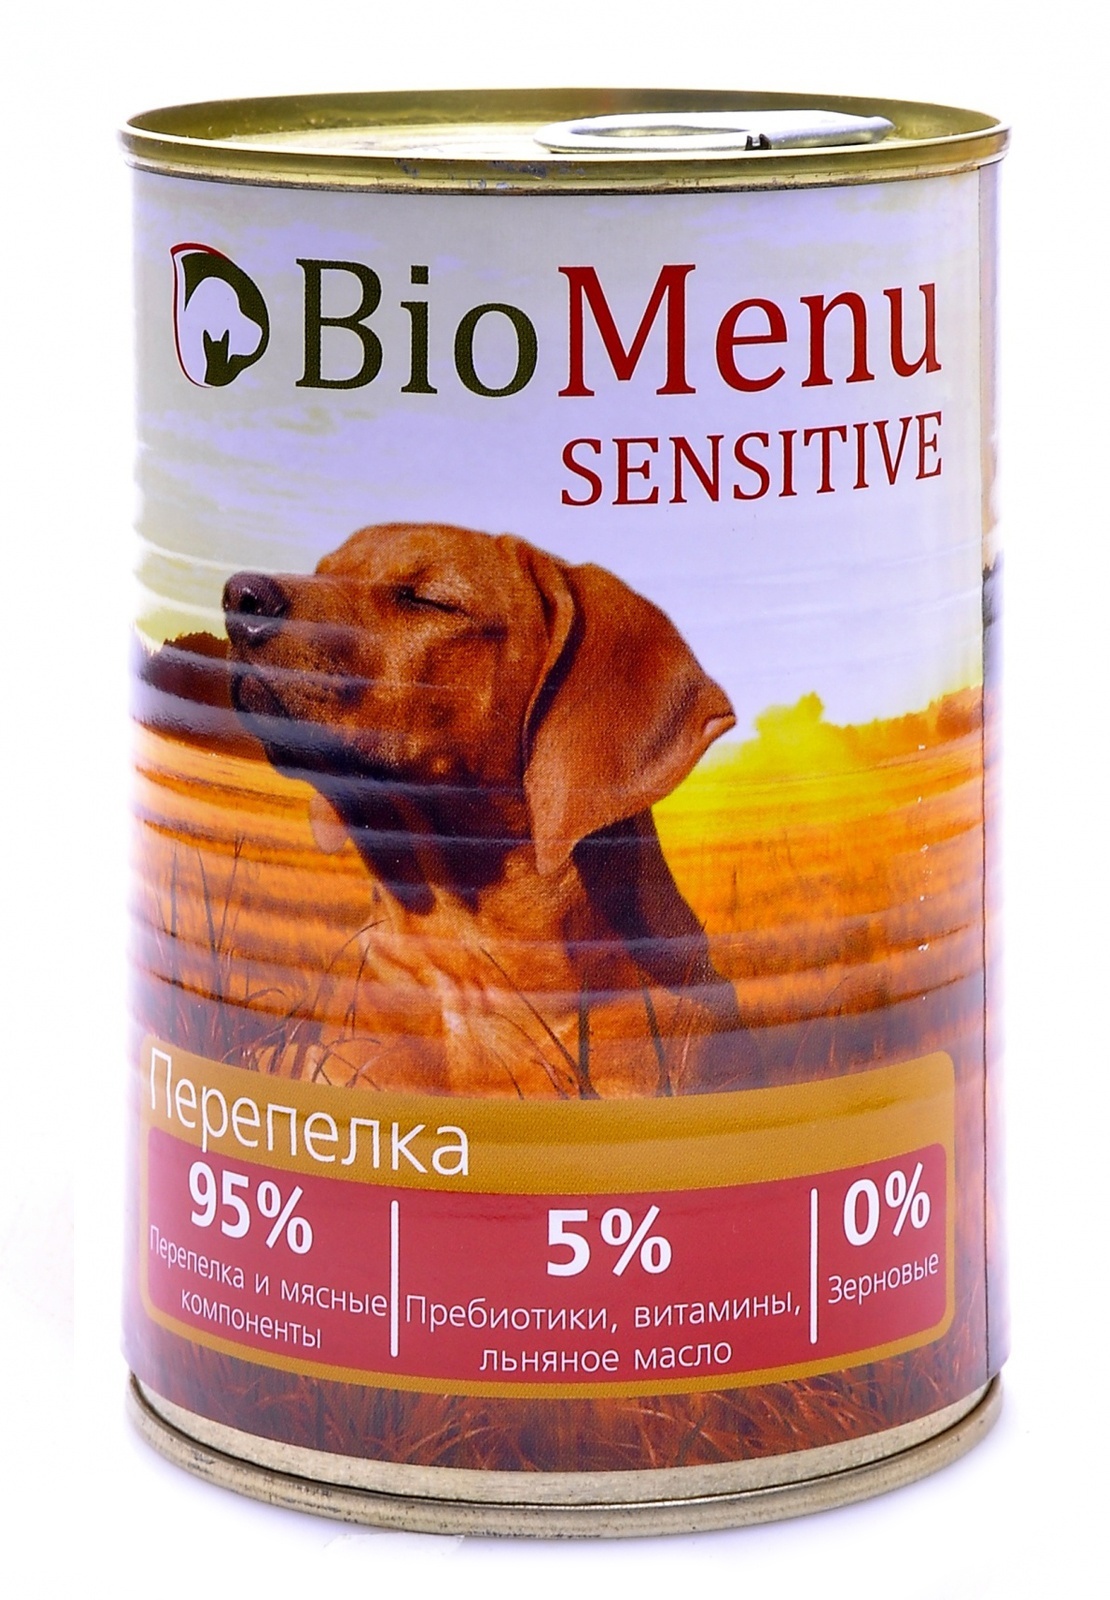 BioMenu BioMenu гипоаллергенные консервы для собак перепелка (410 г) biomenu biomenu консервы для щенков индейка 100 г